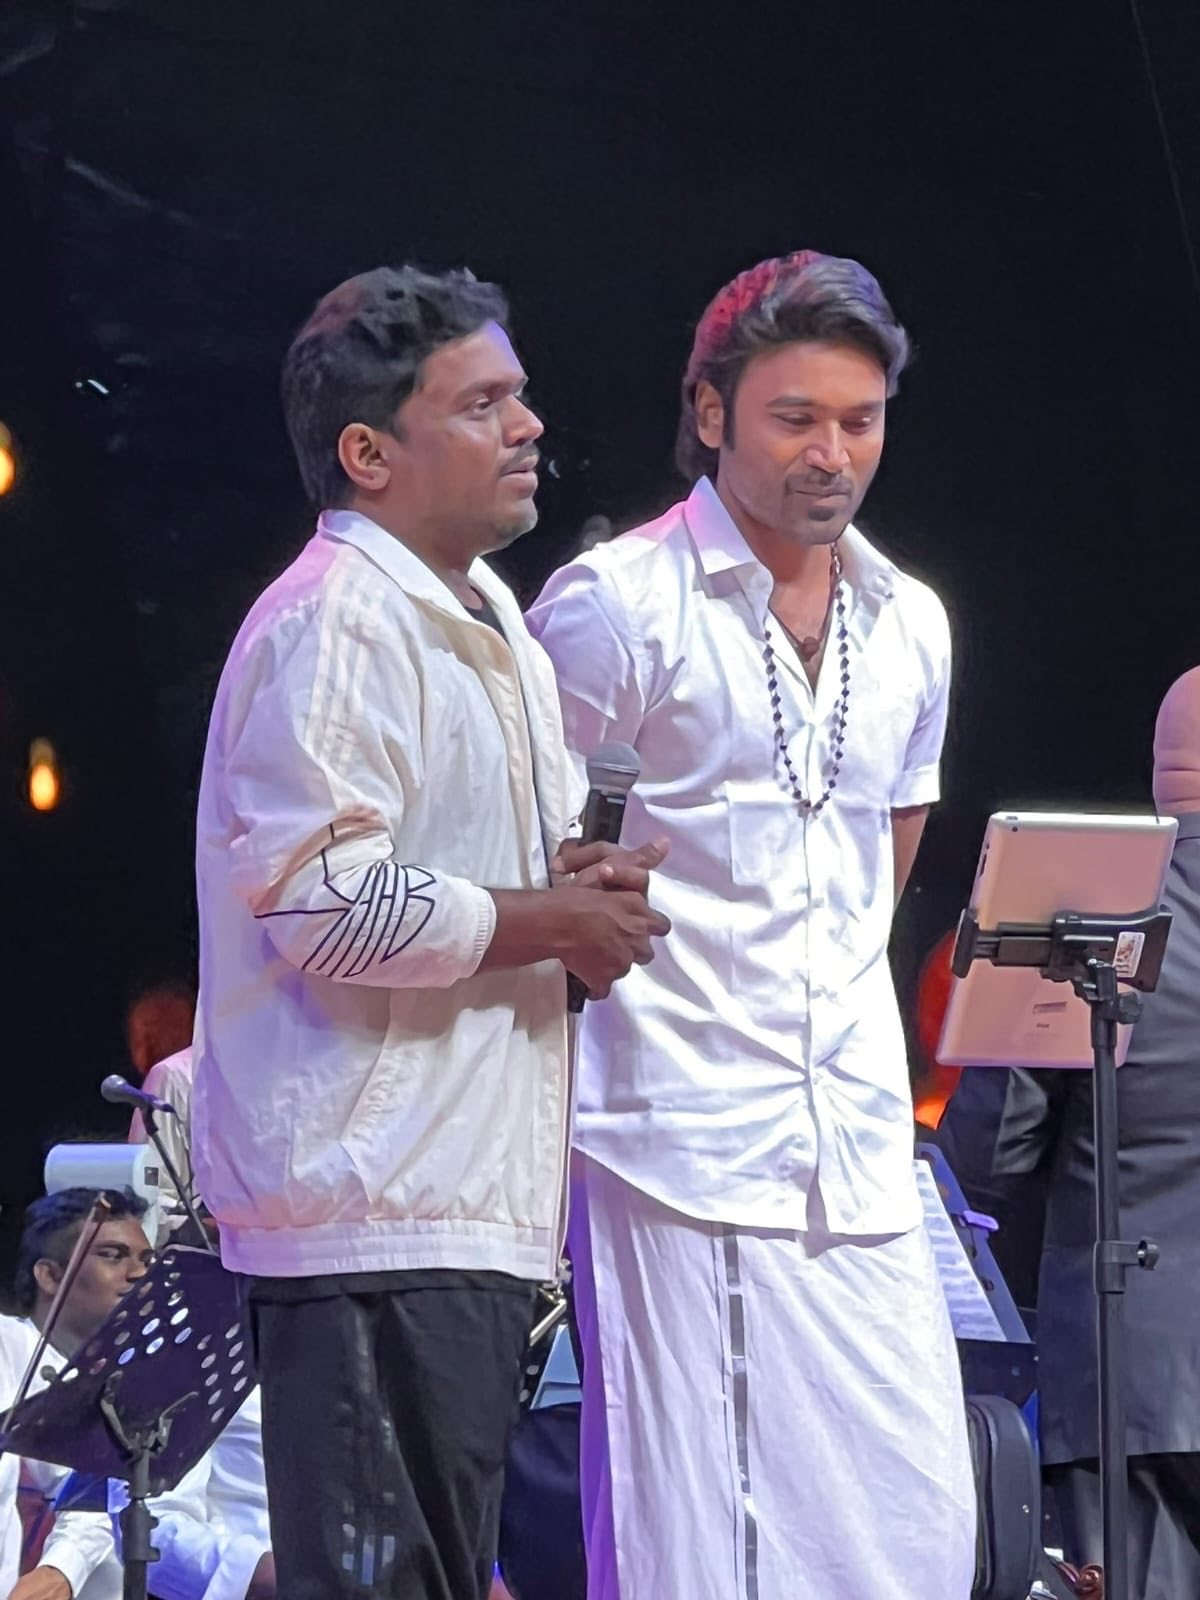 Dhanush Sung Lullaby song for his sons at Ilaiyaraaja concert